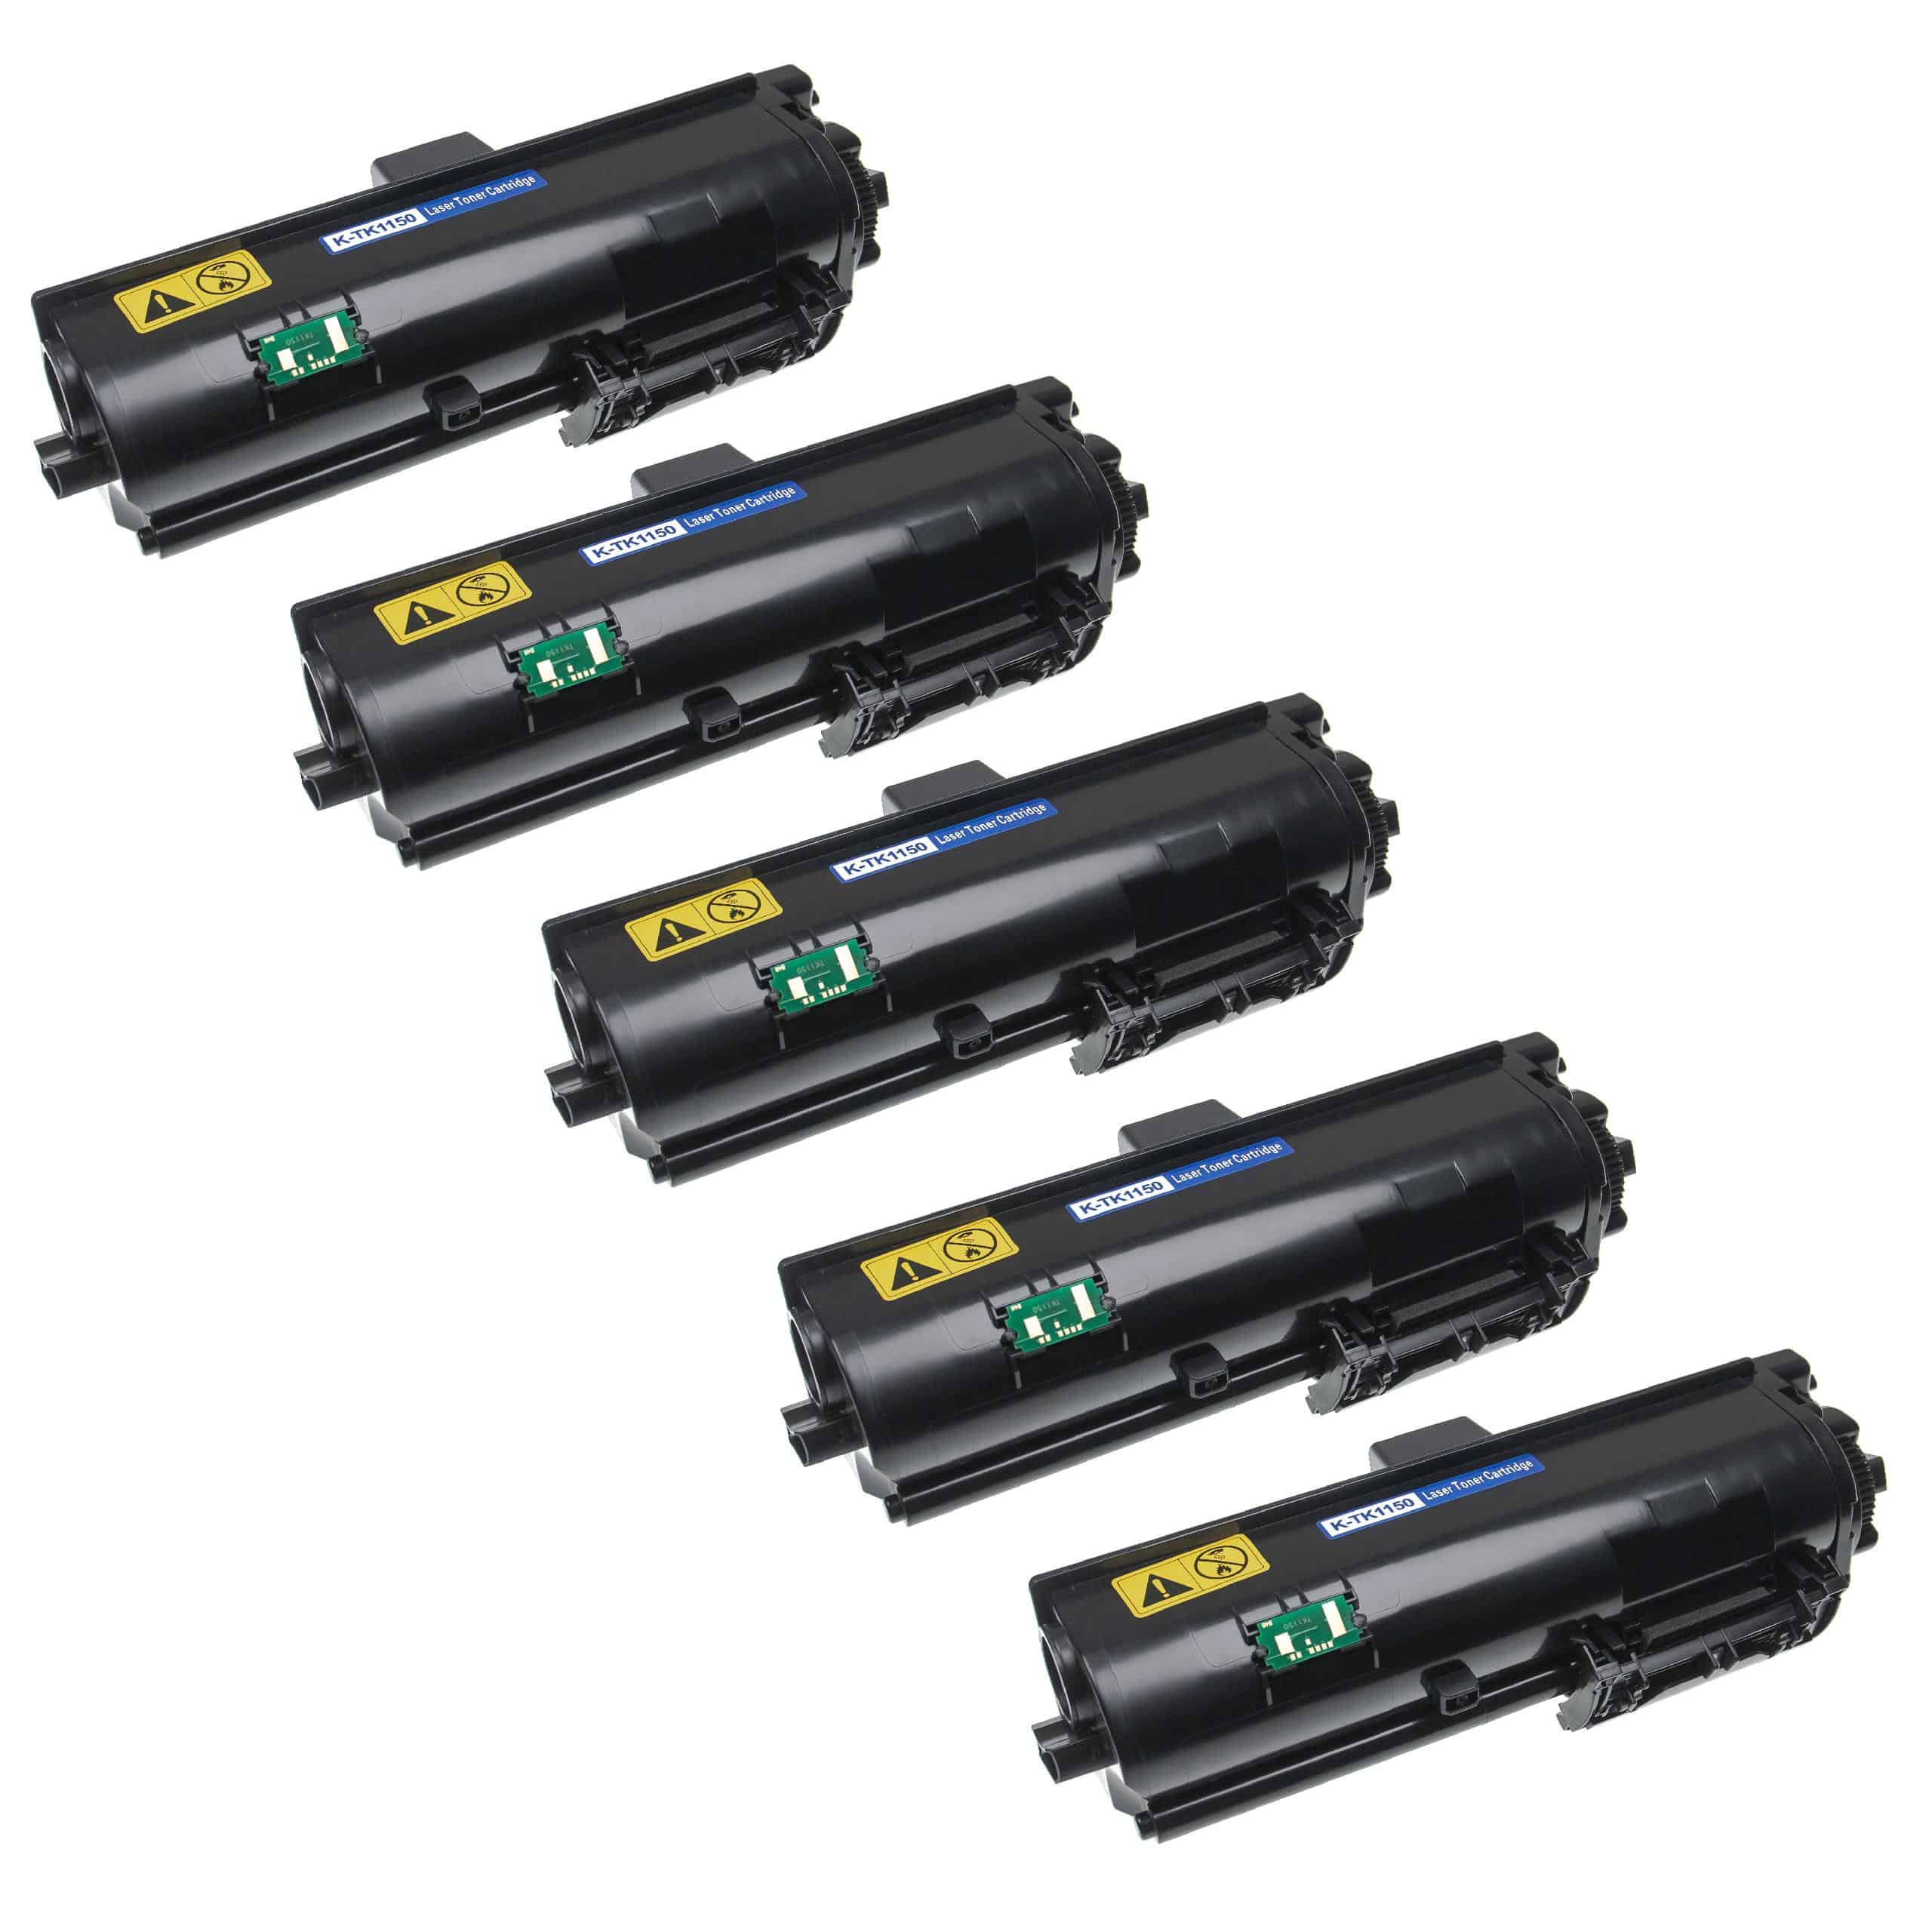 5x Cartouches de toner remplace Kyocera TK-1150 pour imprimante laser Kyocera, noir